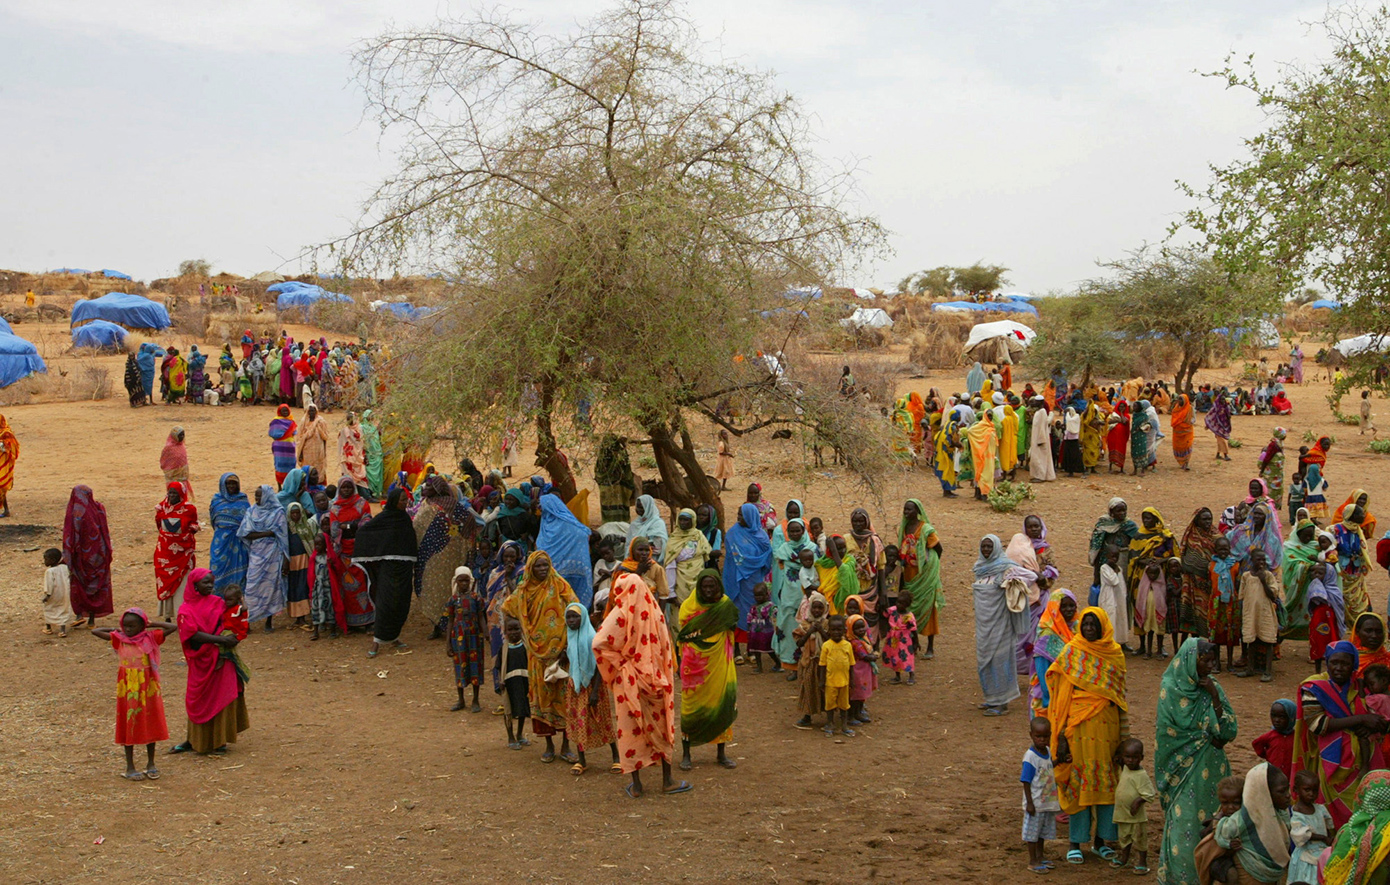 Πάνω από 7 εκατομμύρια άνθρωποι κινδυνεύουν με οξεία διατροφική ανασφάλεια στο Νότιο Σουδάν